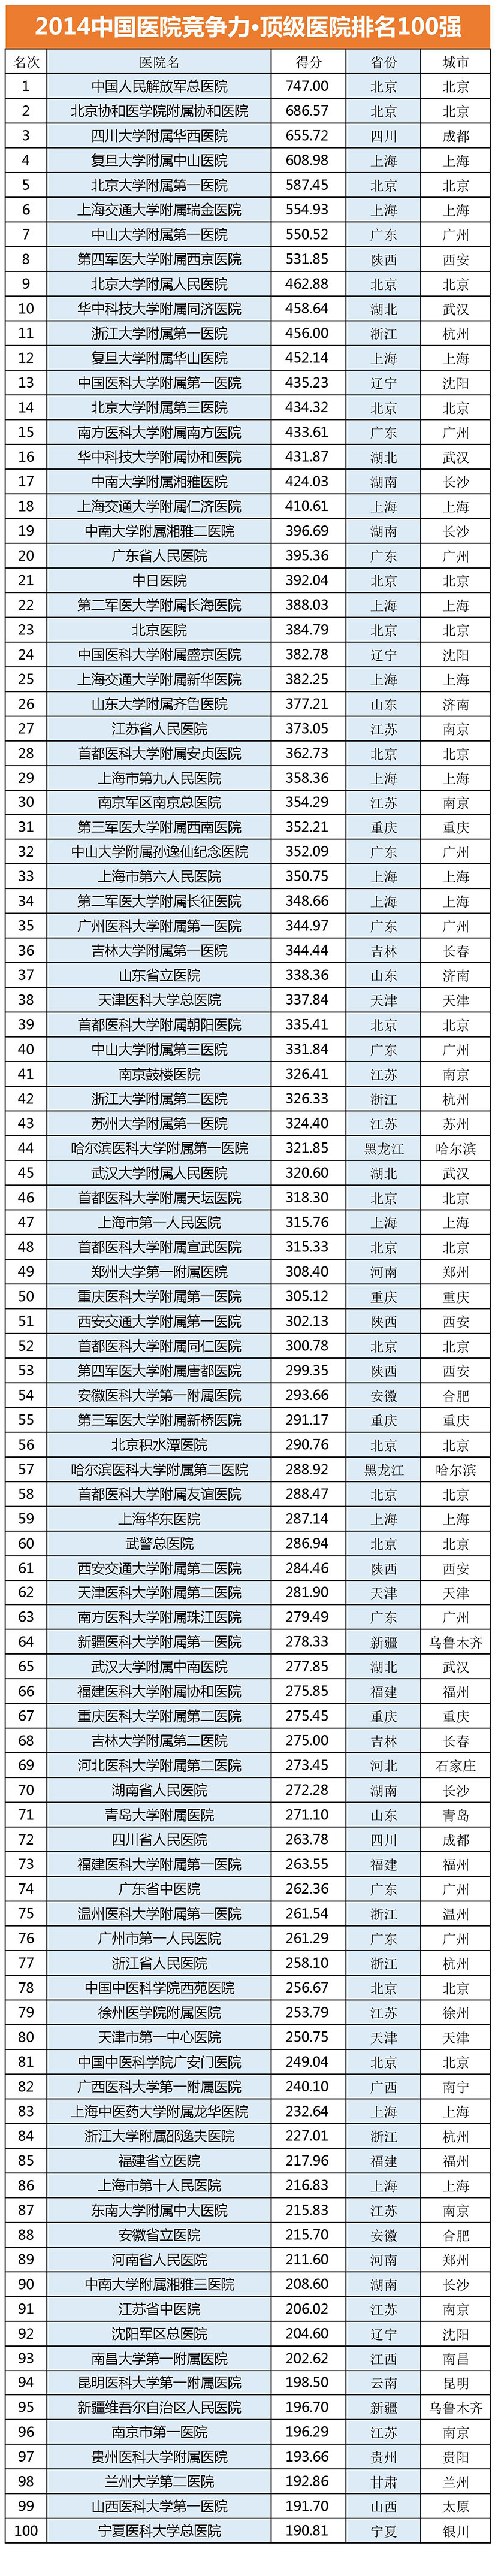 2014中国医院竞争力100强排行榜名单